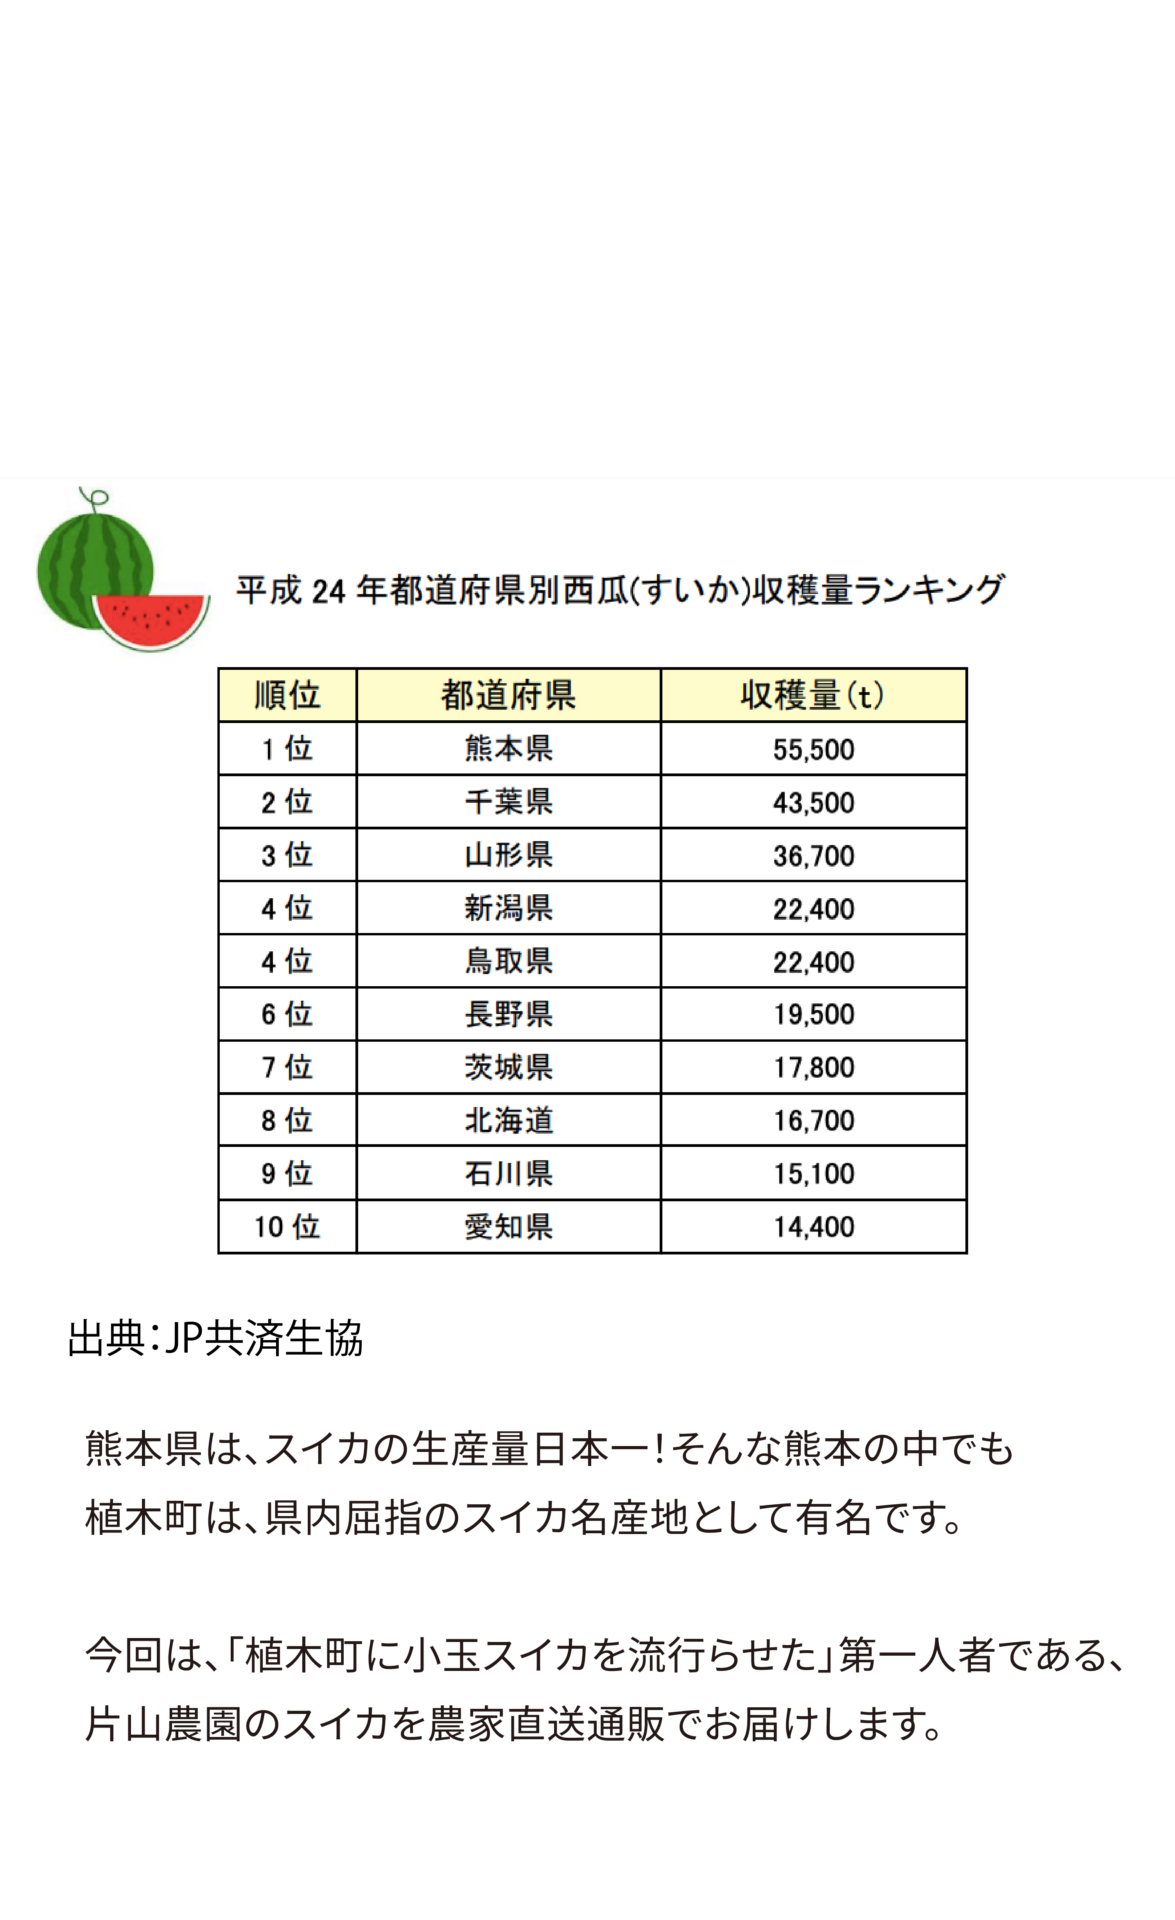 熊本県は、スイカの生産量日本一！そんな熊本の中でも植木町は、県内屈指のスイカ名産地として有名です。今回は、「植木町に小玉スイカを流行らせた」第一人者である、片山農園のスイカを農家直送通販でお届けします。